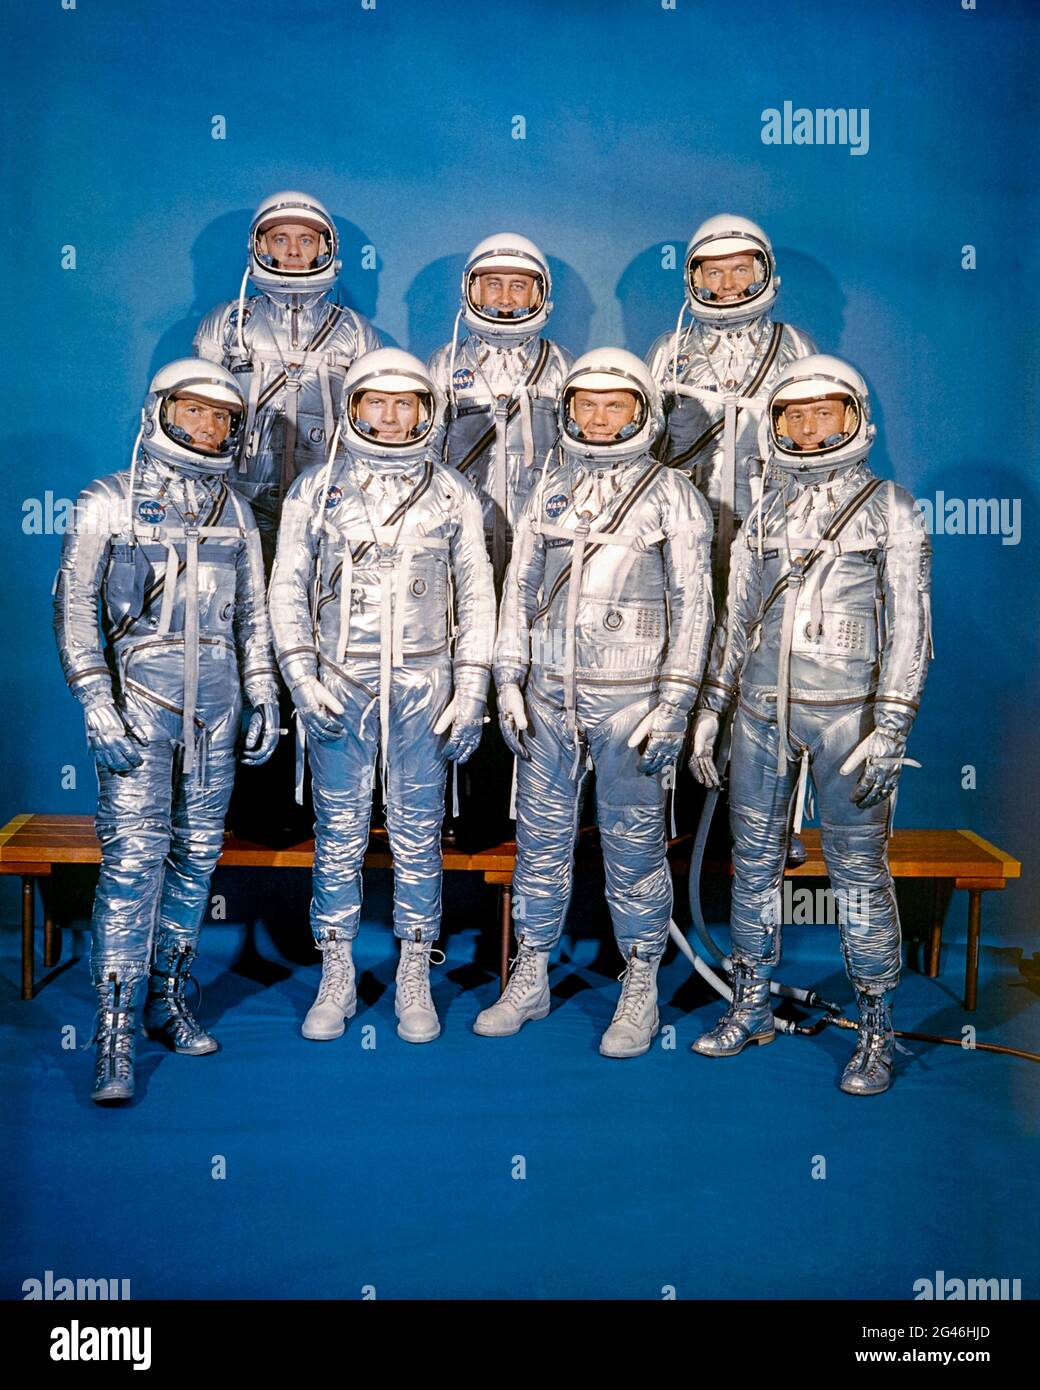 I sette Mercury, conosciuti anche come i sette originali, erano astronauti americani Scott Carpenter, Gordon Cooper, John Glenn, Gus Grissom, Wally Schirra, Alan Shepard e Deke Slayton hanno fotografato il 17 marzo 1960. Foto Stock